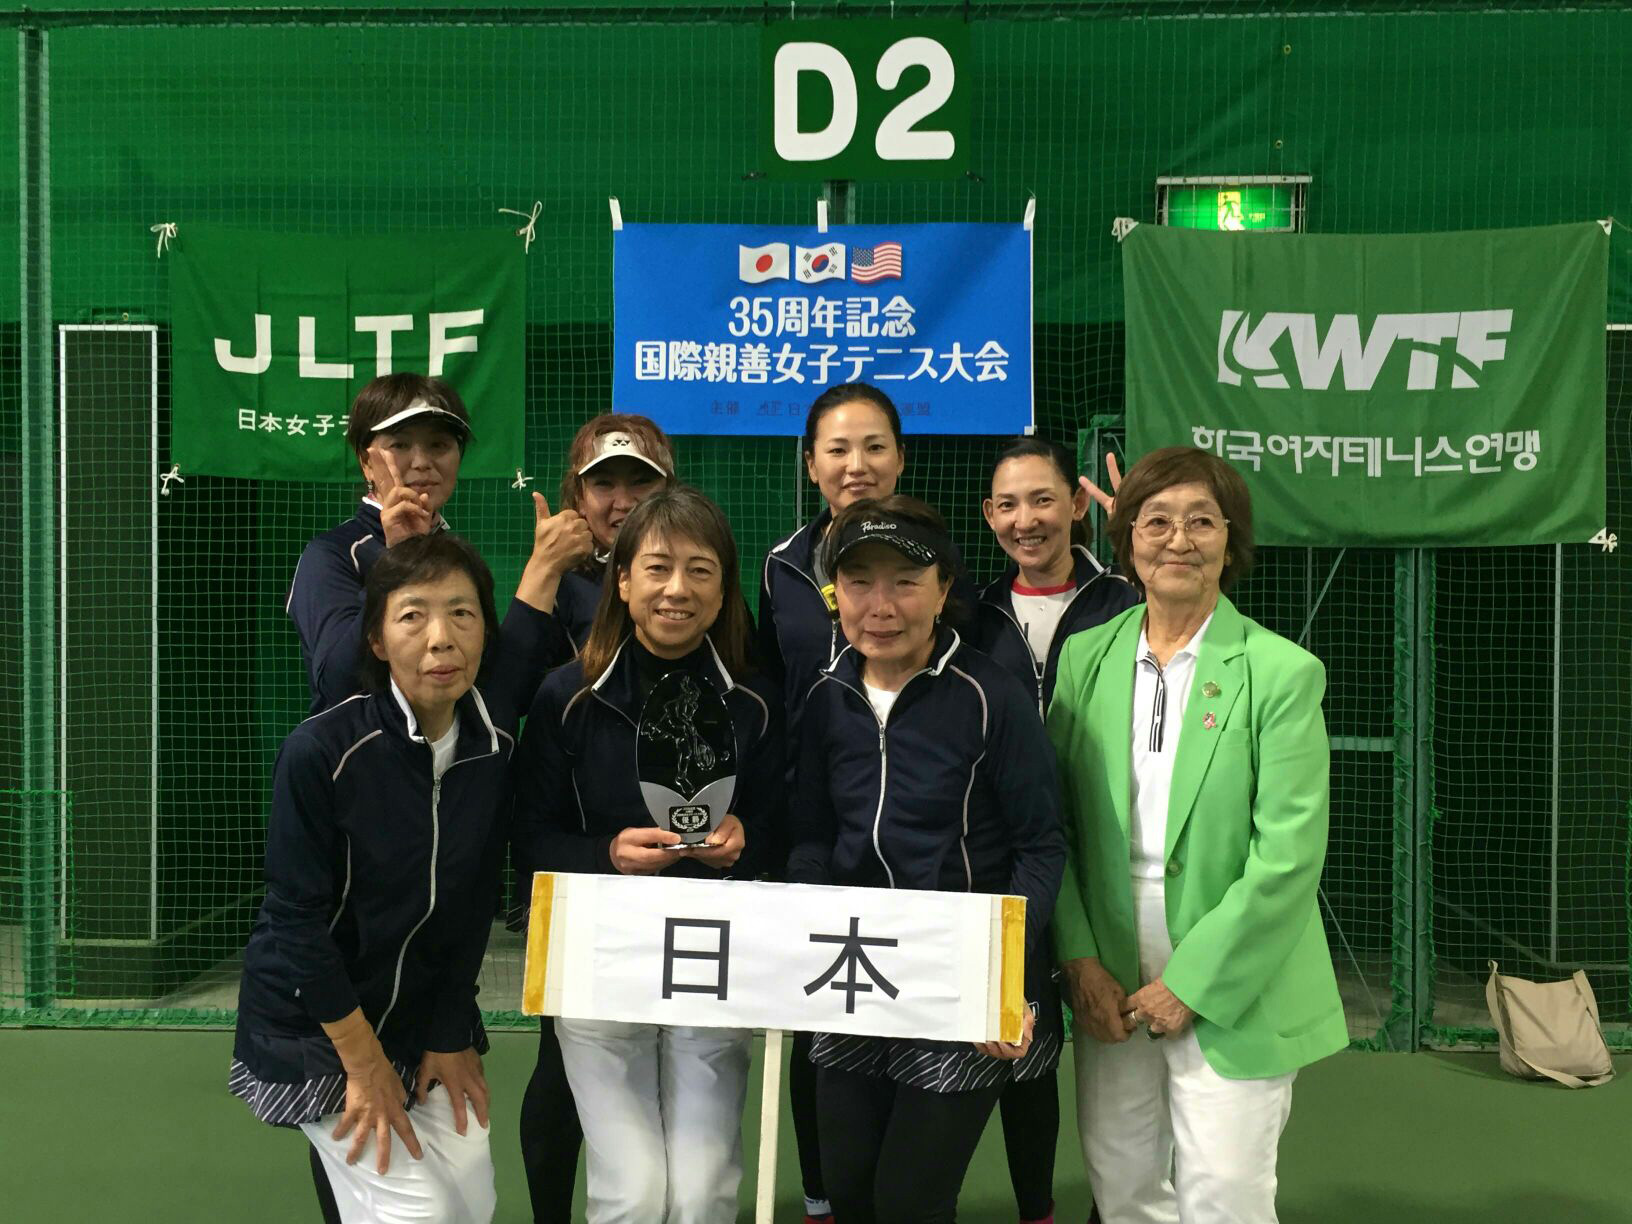 日本女子テニス連盟兵庫県支部